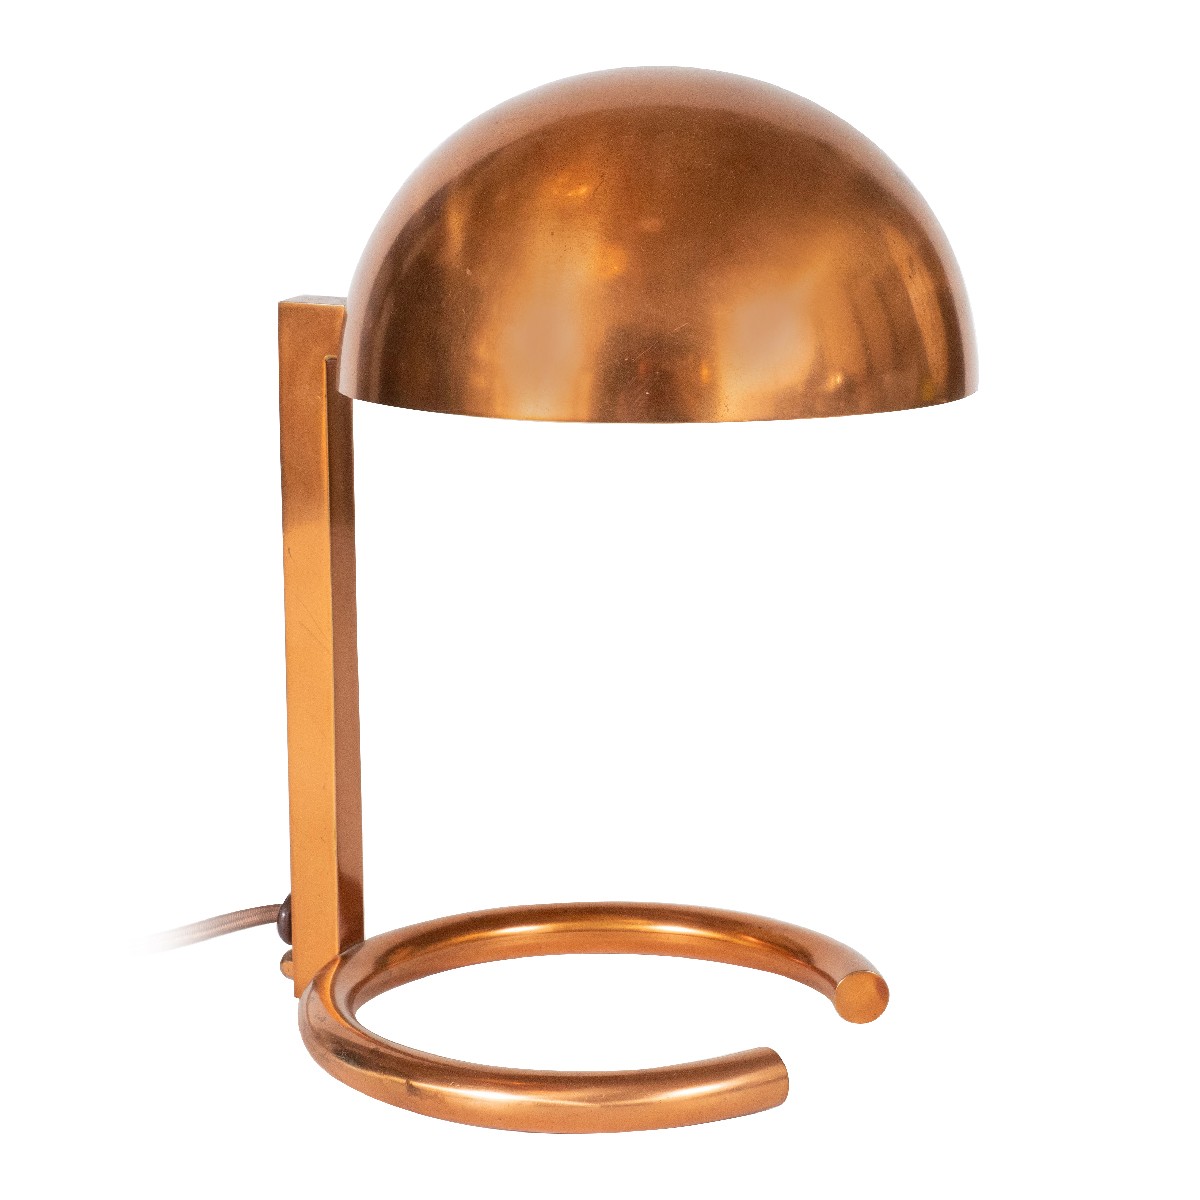 Machine Age copper desk lamp by Adnet